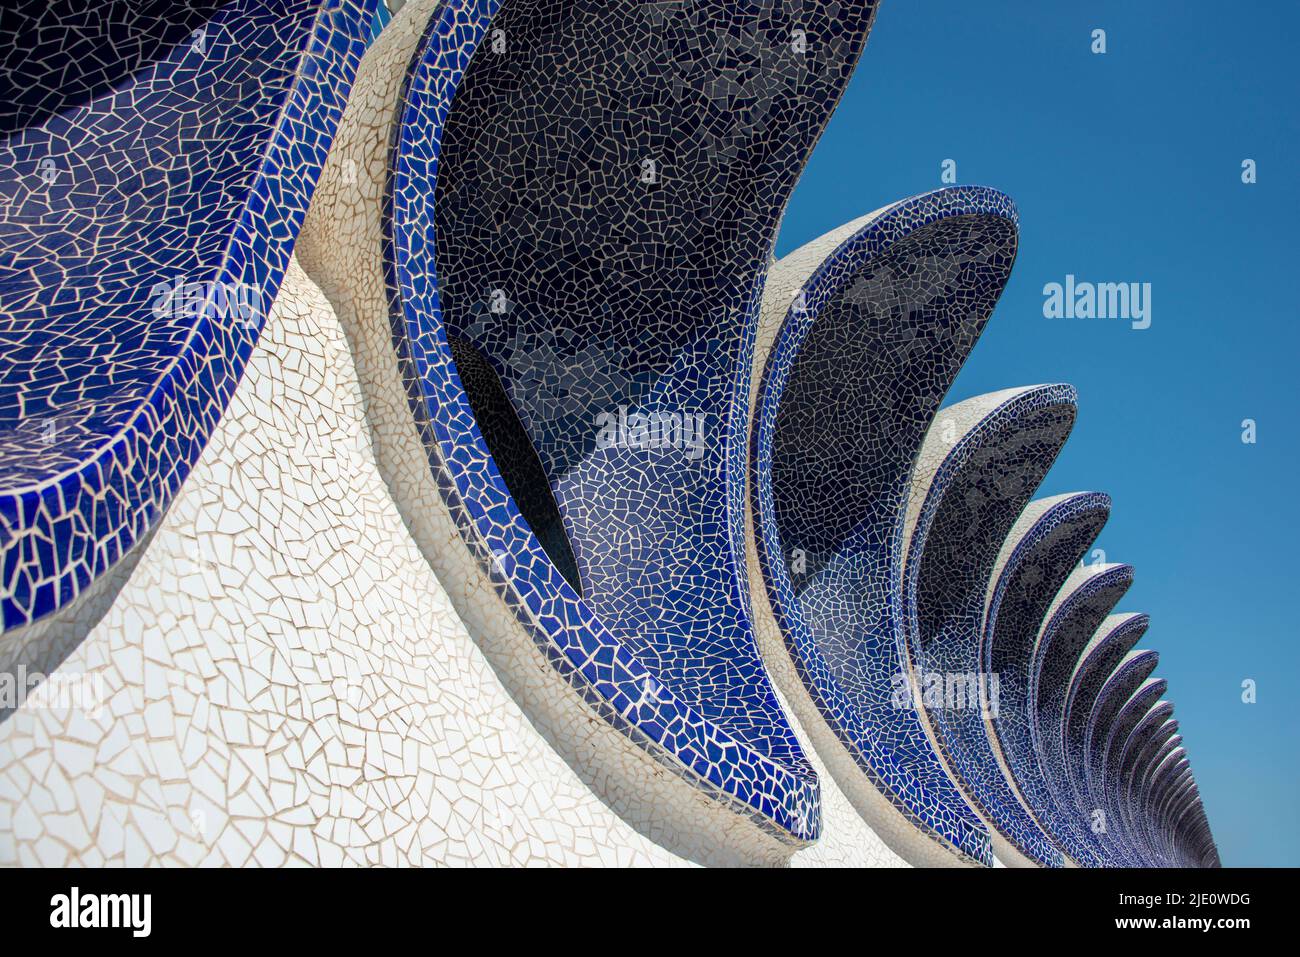 Detalles en mosaico azul y blanco de la arquitectura moderna de la Ciudad de las Artes y las Ciencias de Valencia. Foto de stock